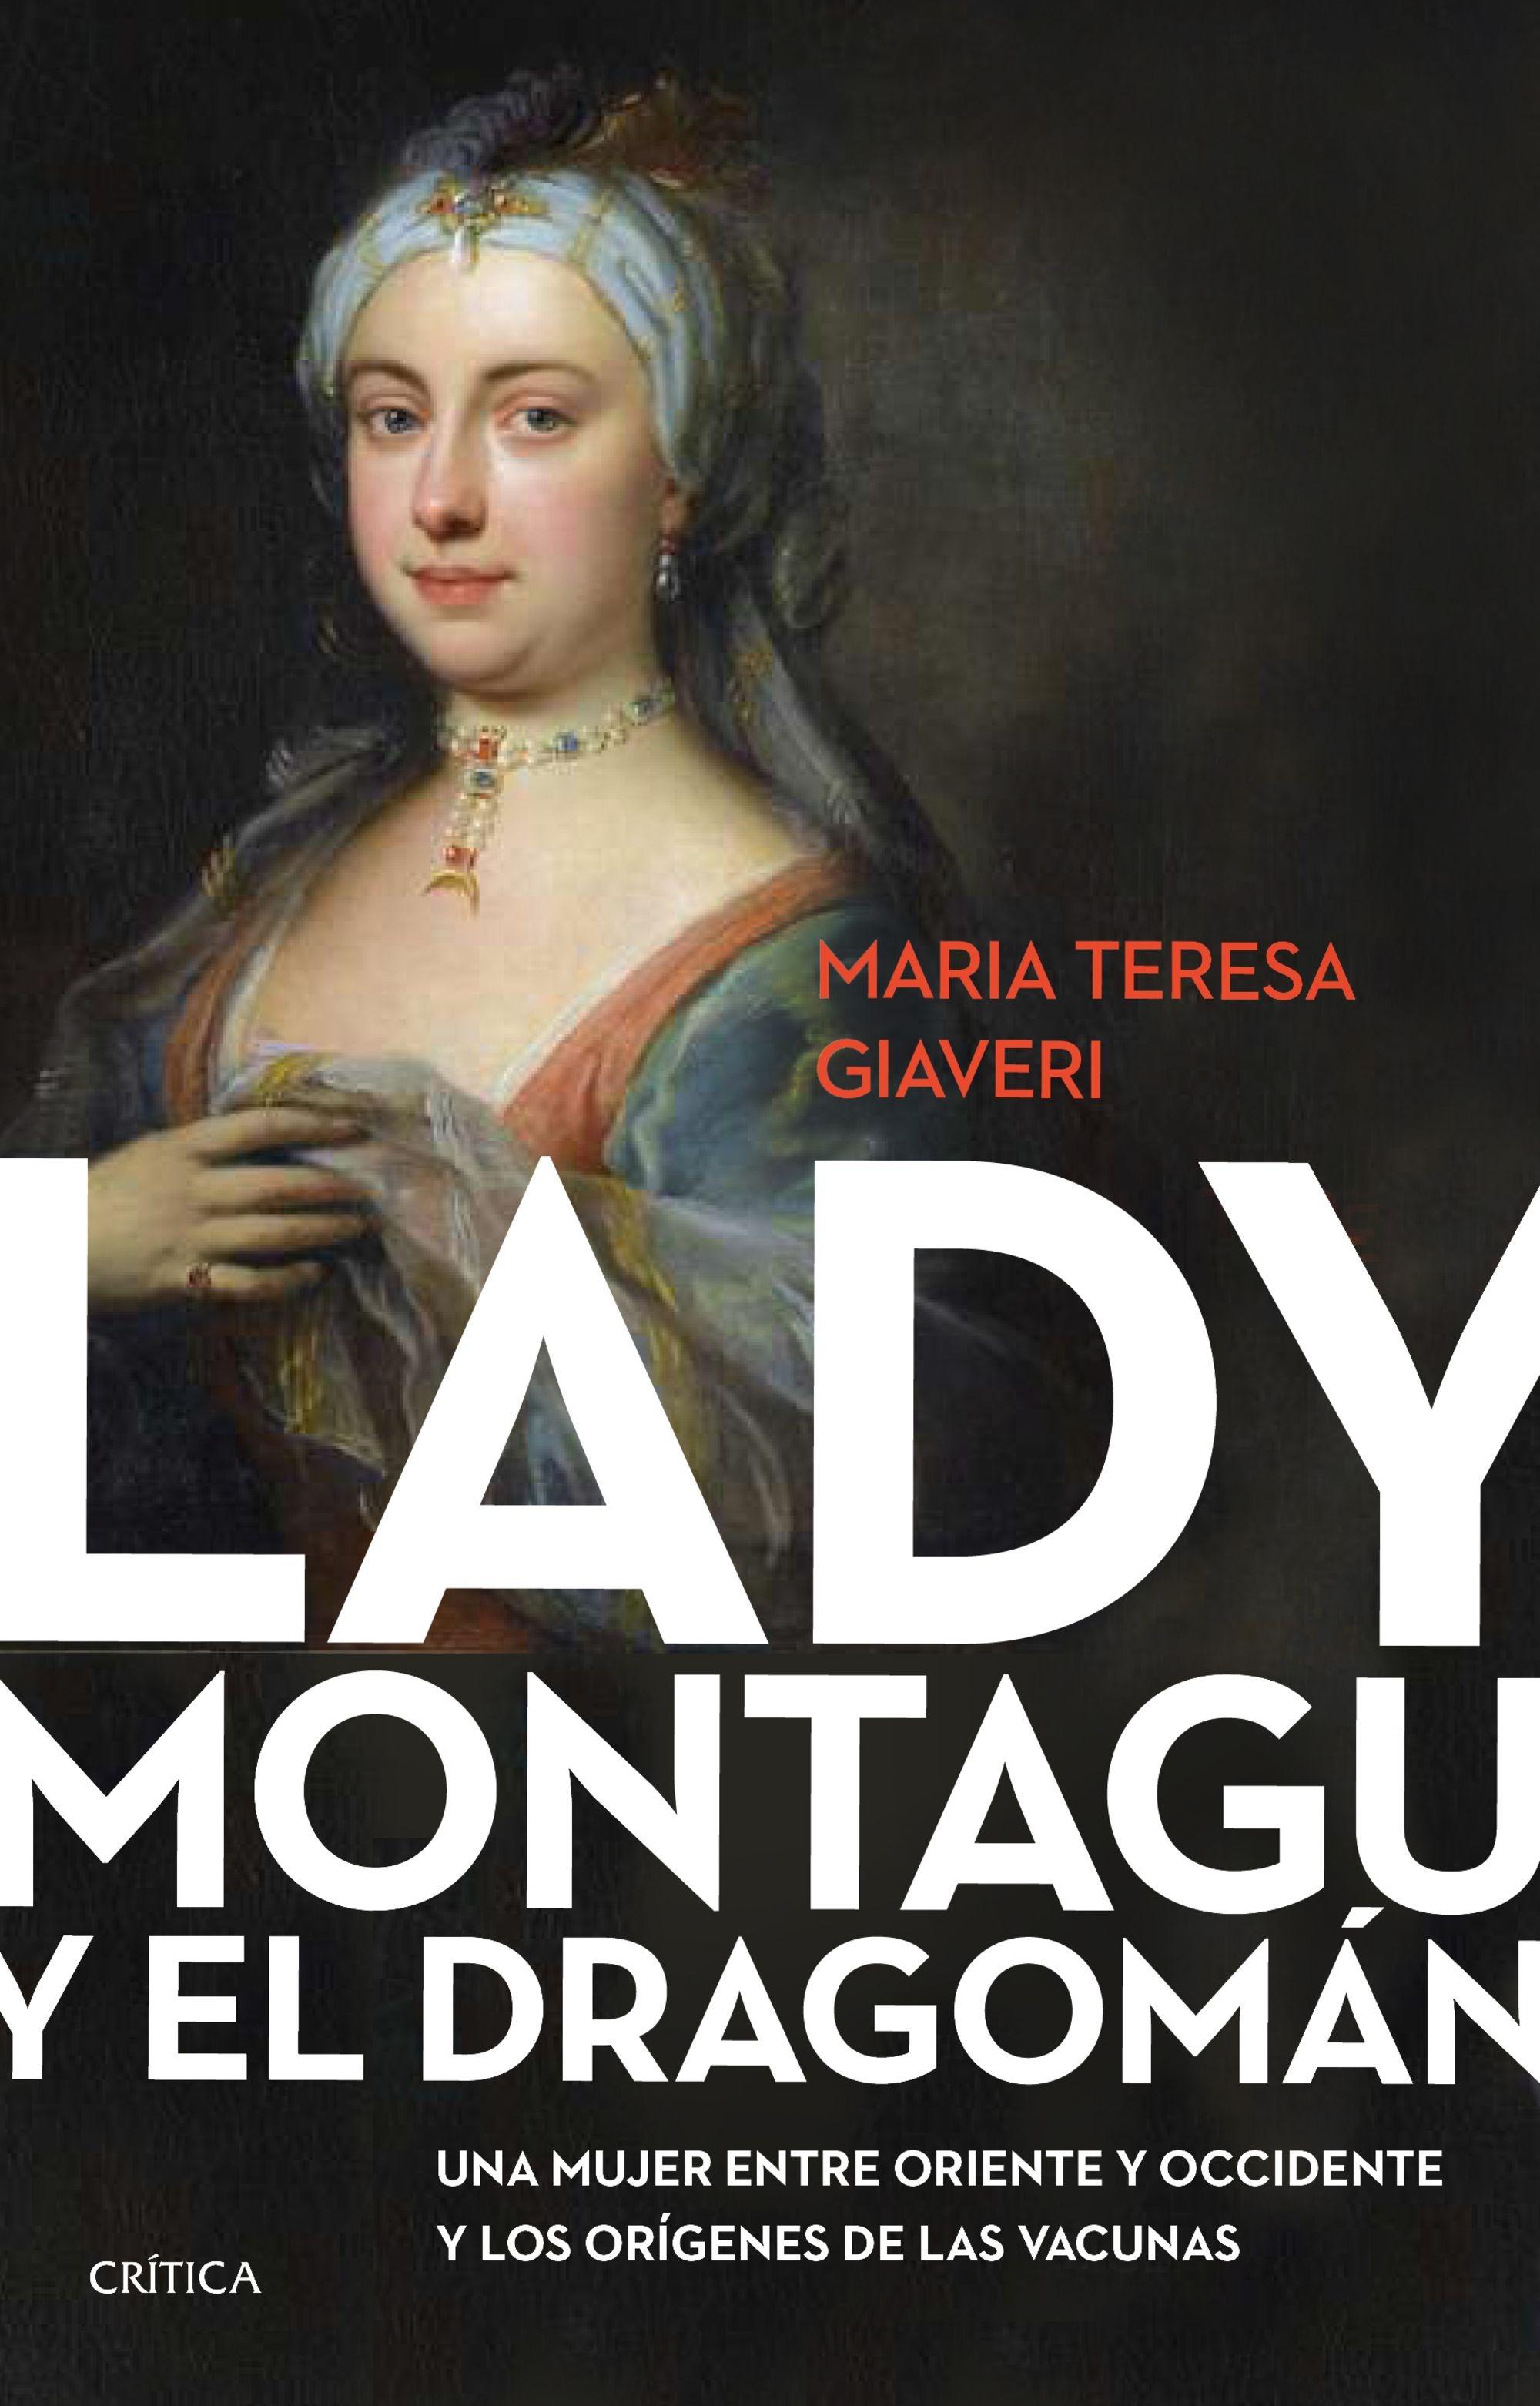 Lady Montagu y el dragomán "Una mujer entre Oriente y Occidente y los orígenes de las vacunas"